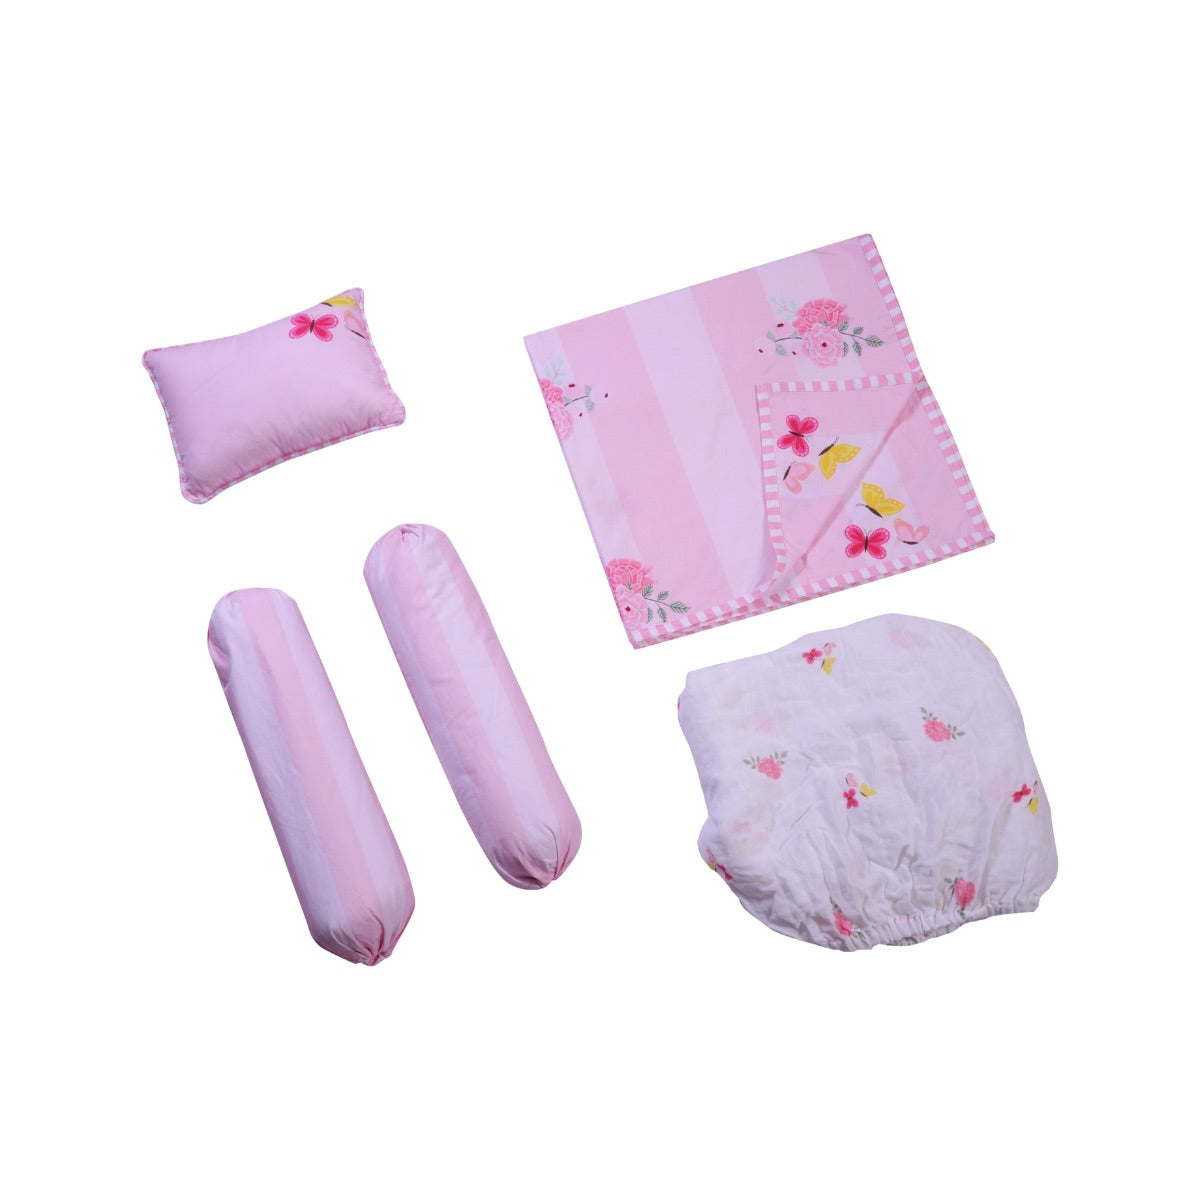 Little By Little Floral & Flutter Cot Bedding Set with Dohar Blanket, Pink